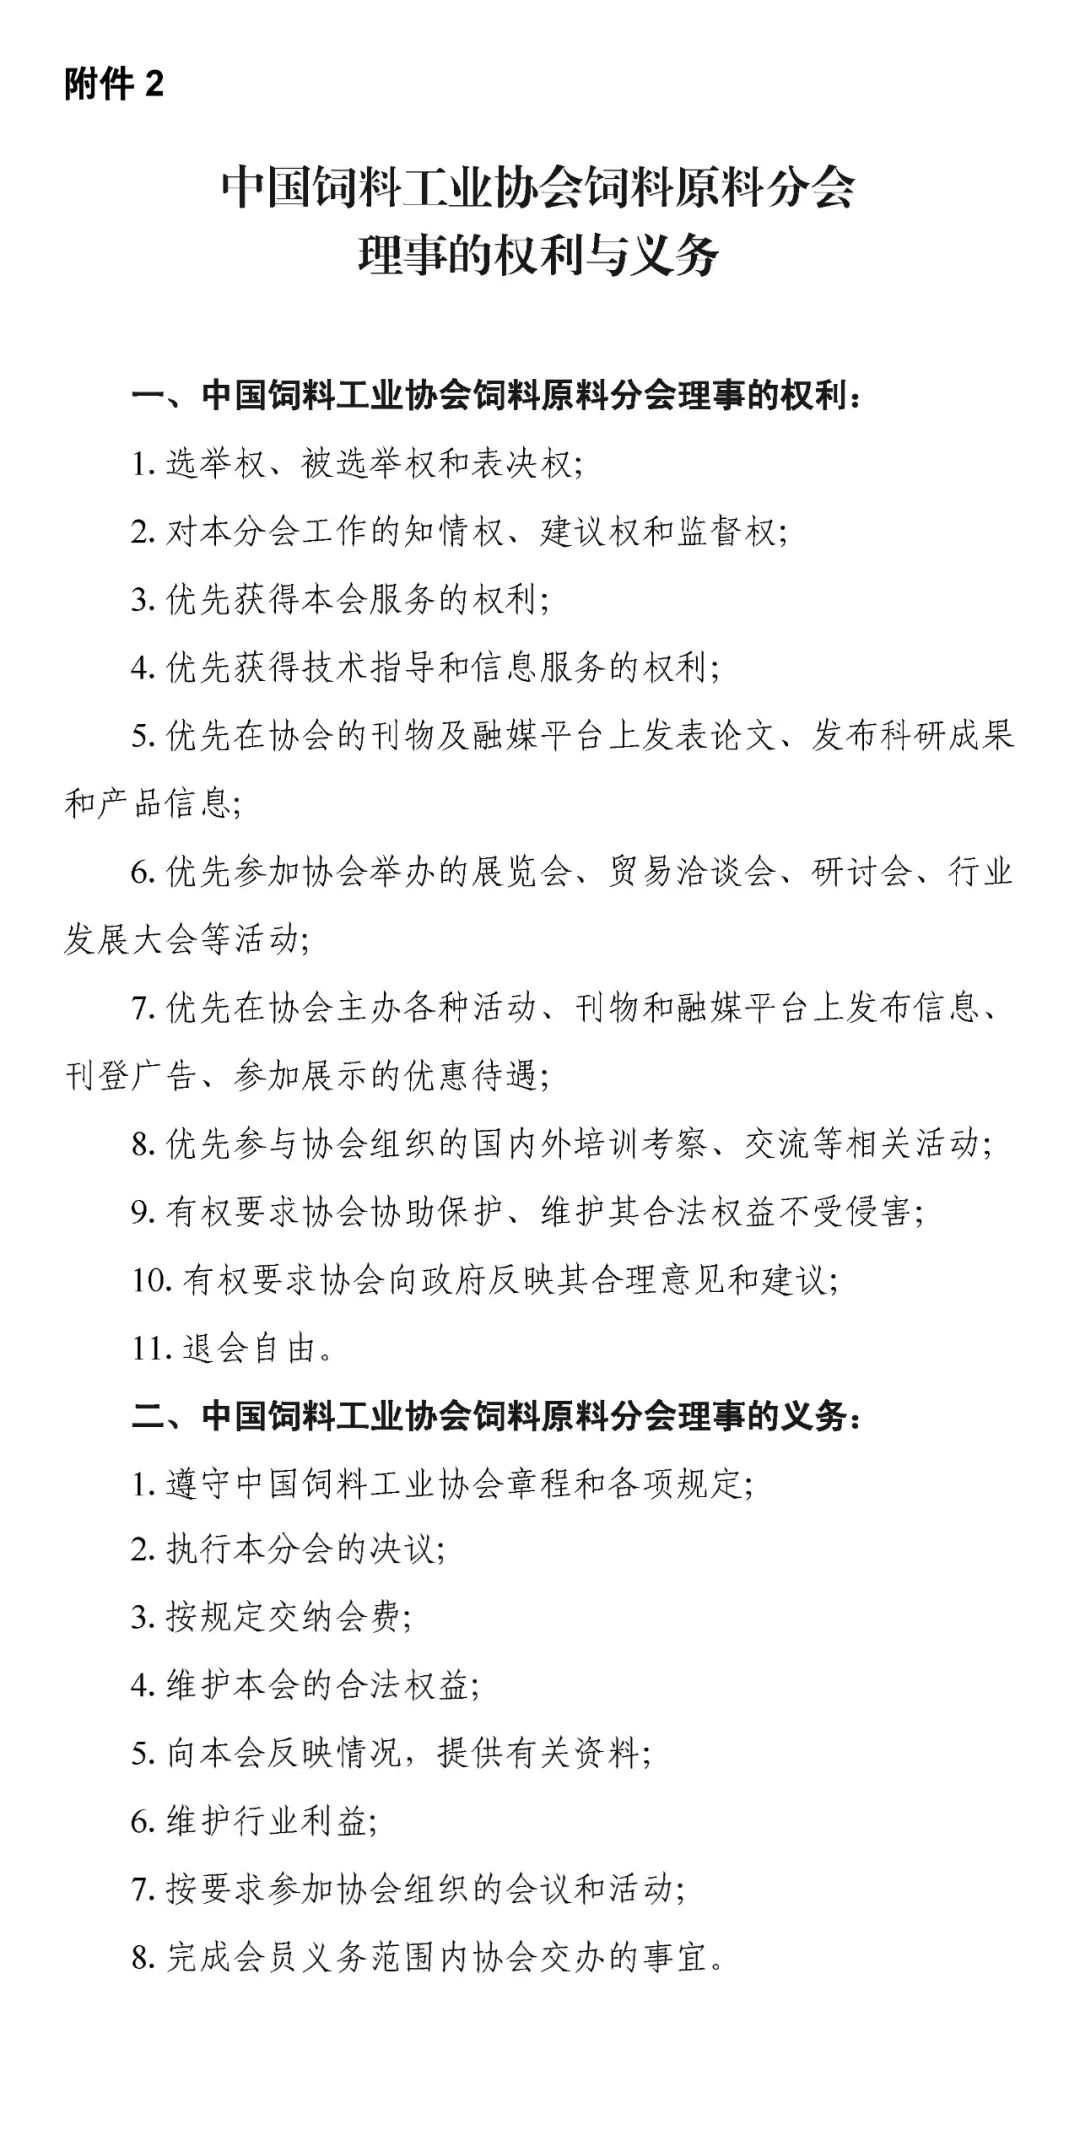 关于自荐、推荐中国饲料工业协会饲料原料分会第一届理事会理事候选单位、理事候选人的通知